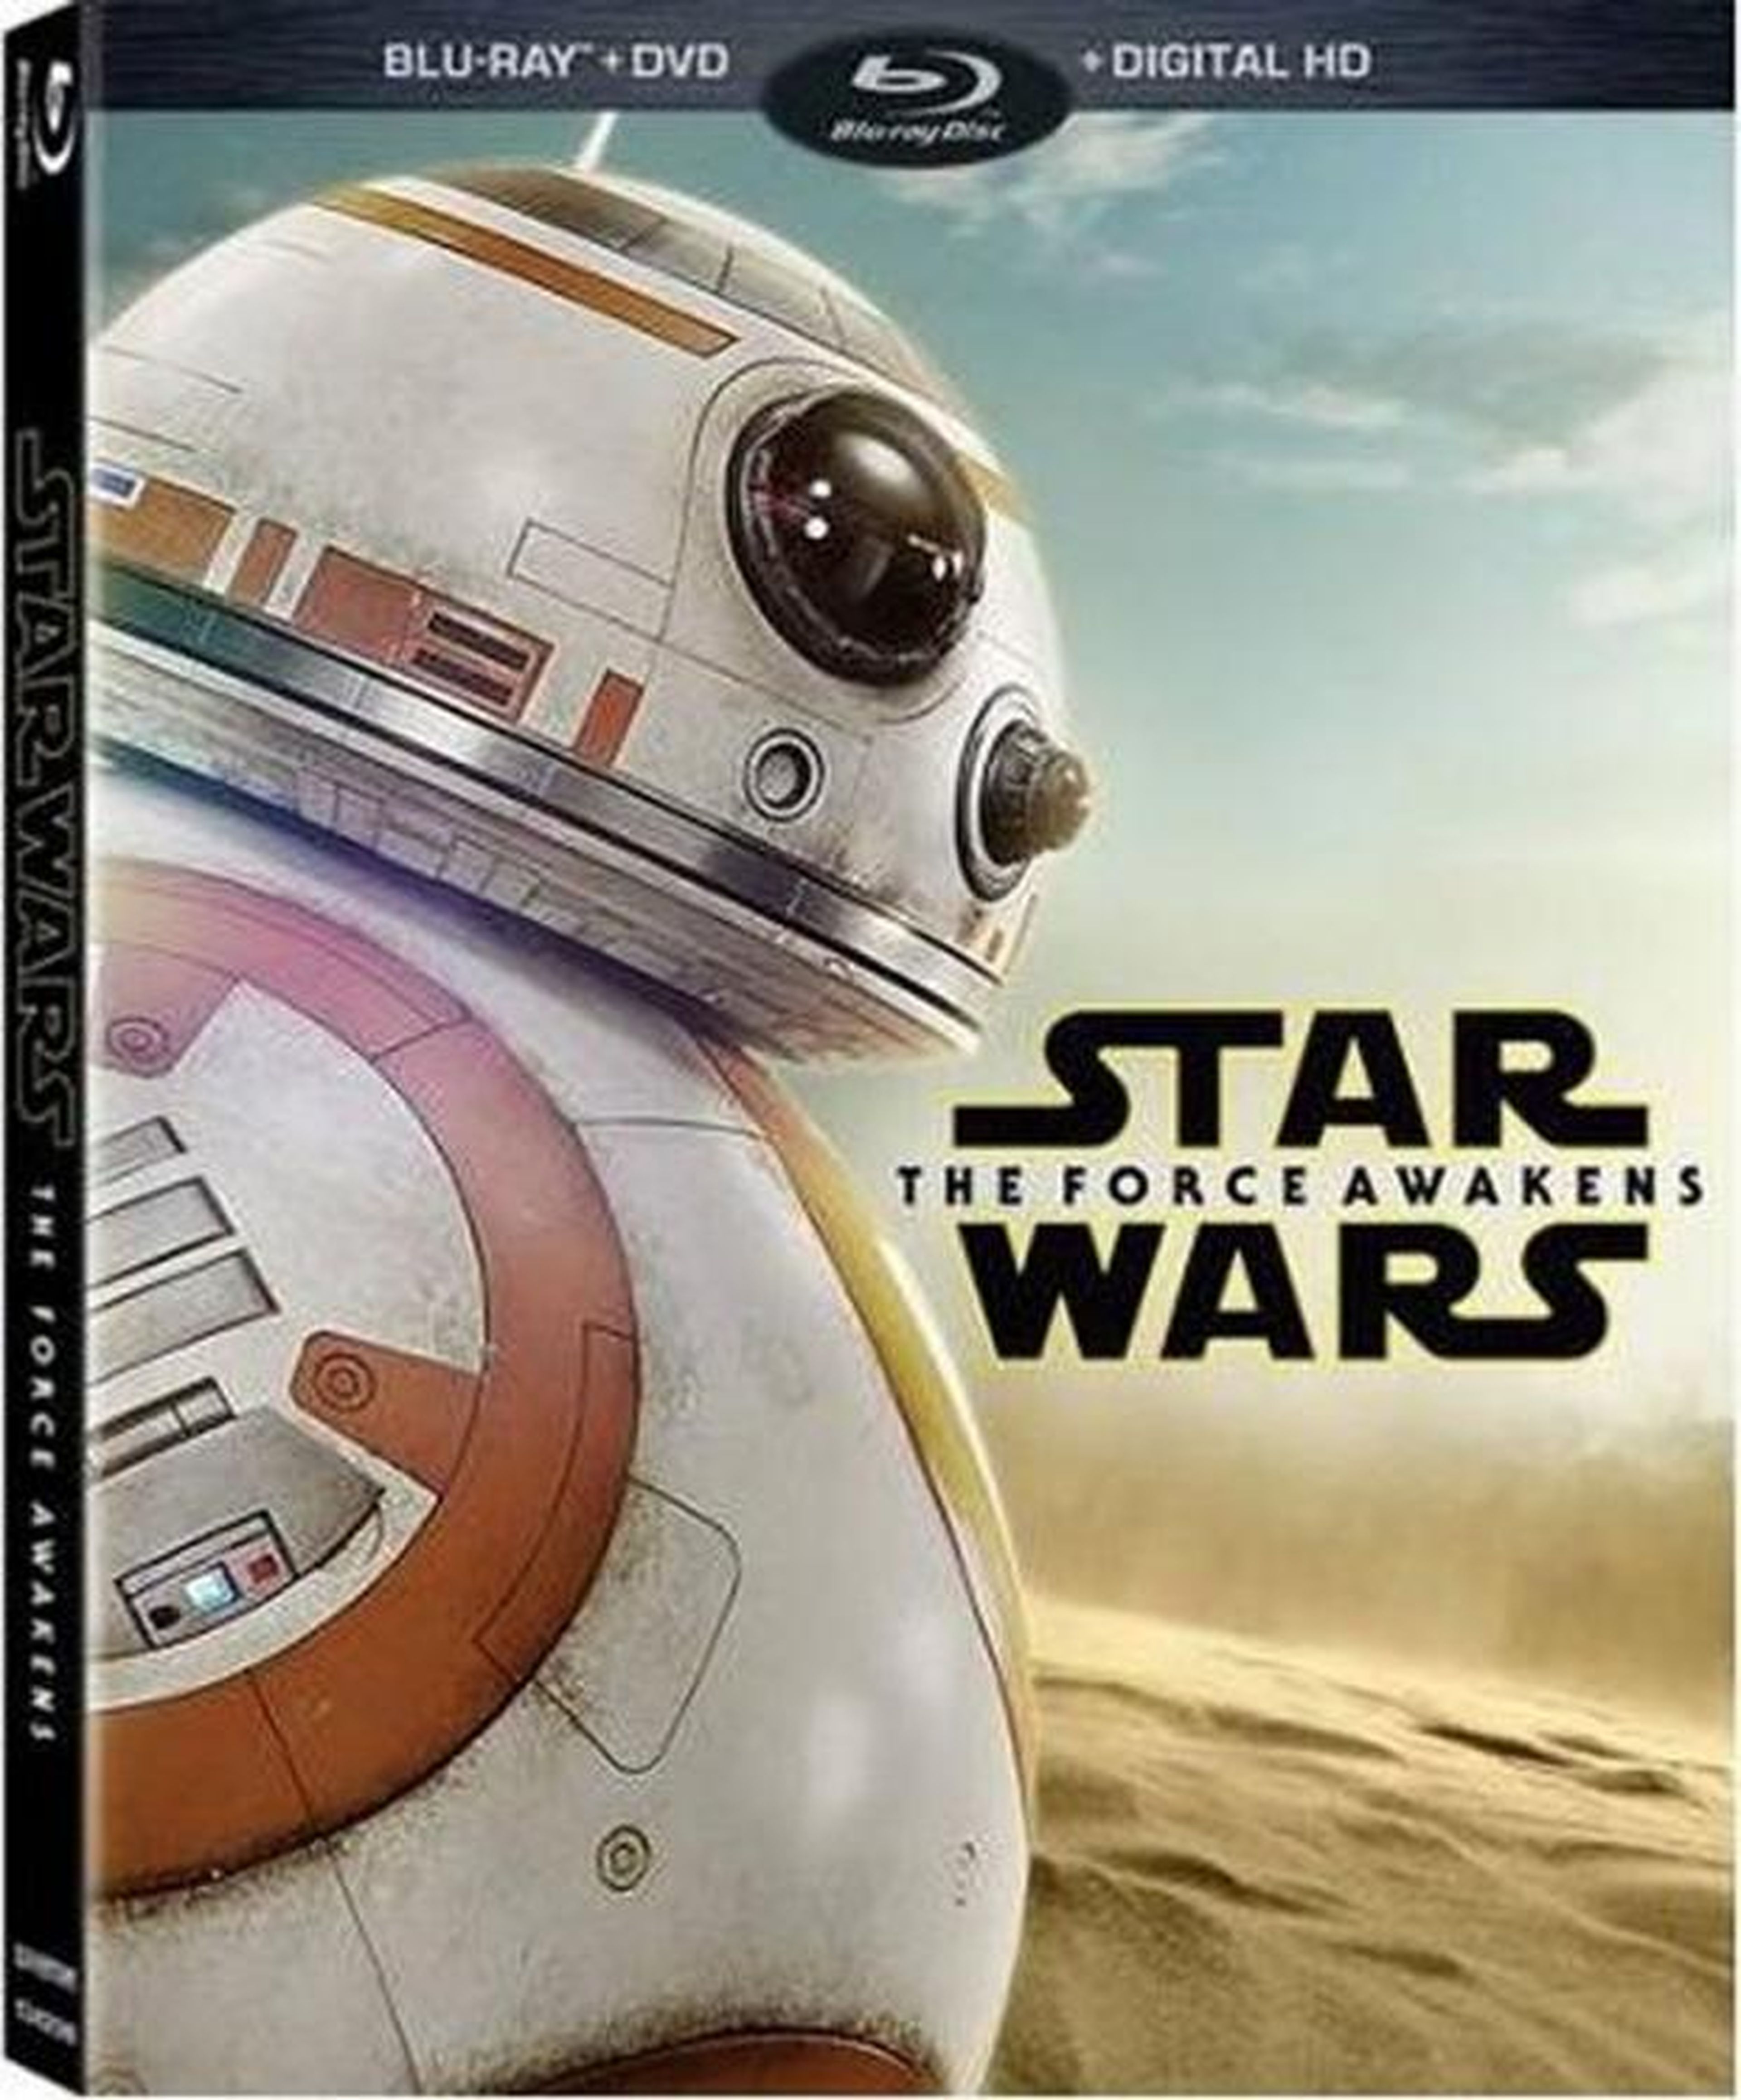 Star wars blu-ray disco DVD episodio el criterio de recopilación inc, star  wars, episodio de star wars vii, Art º, vhs png